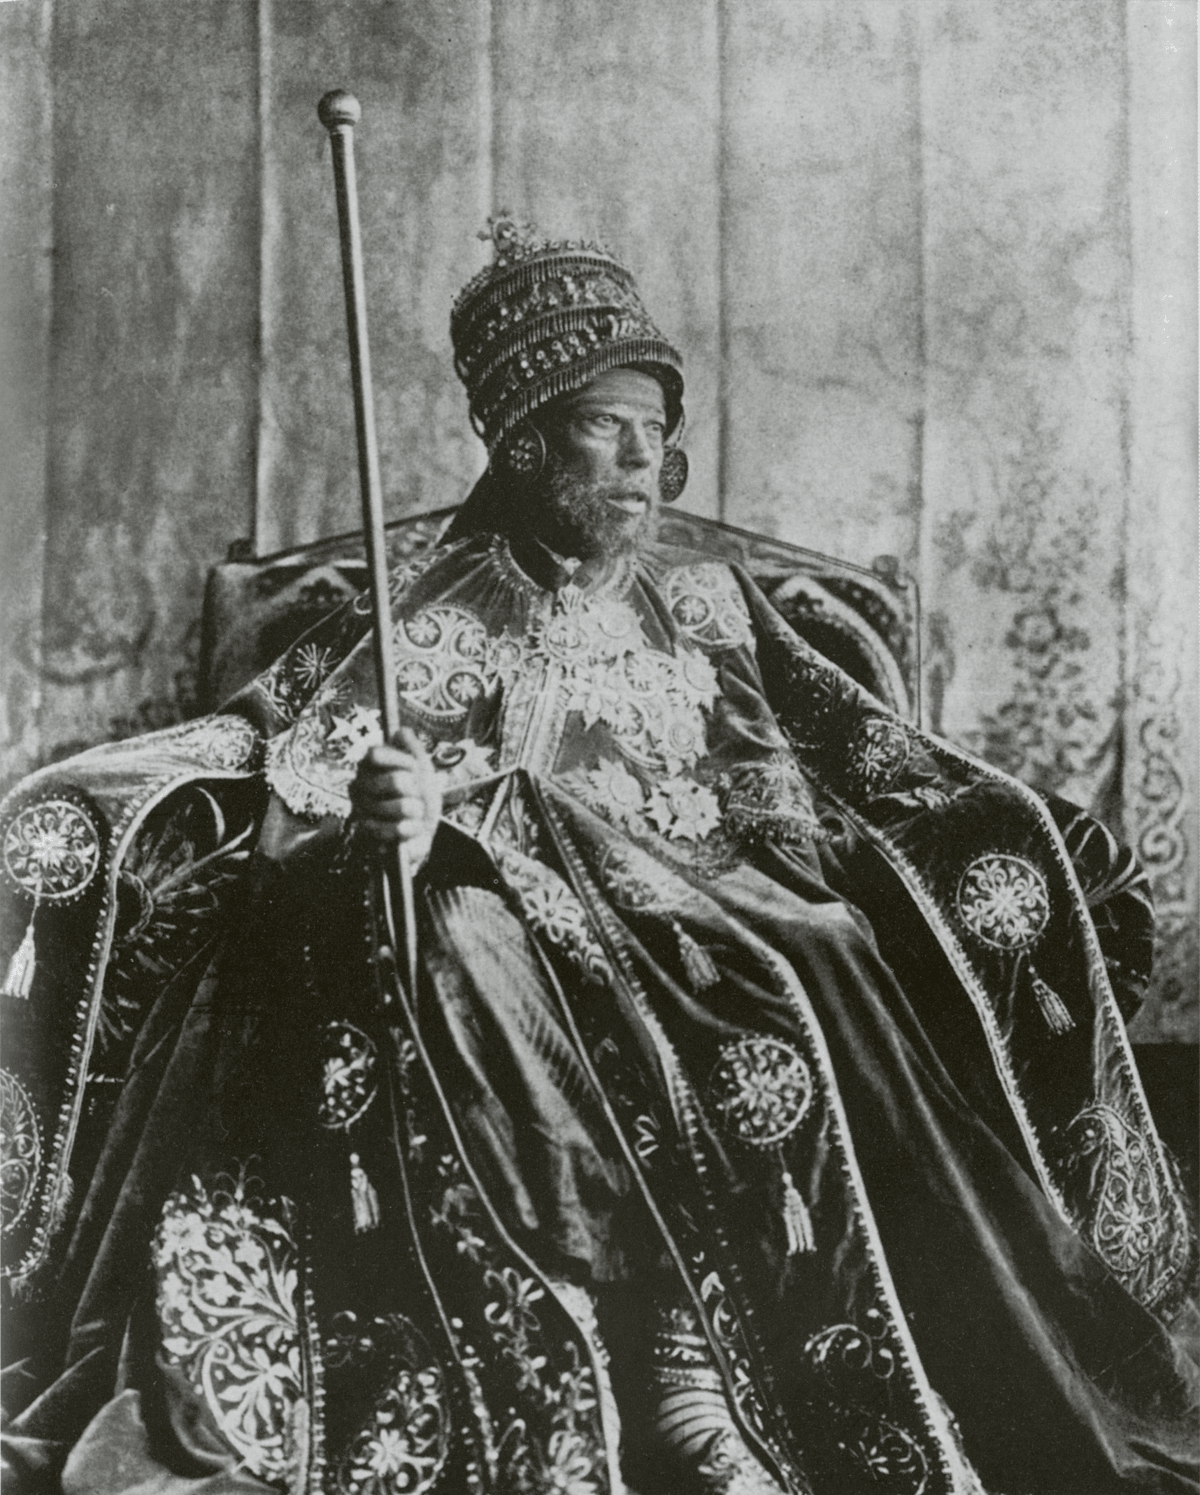 Menelik II of Ethiopia in his coronation robes, approx 1889.